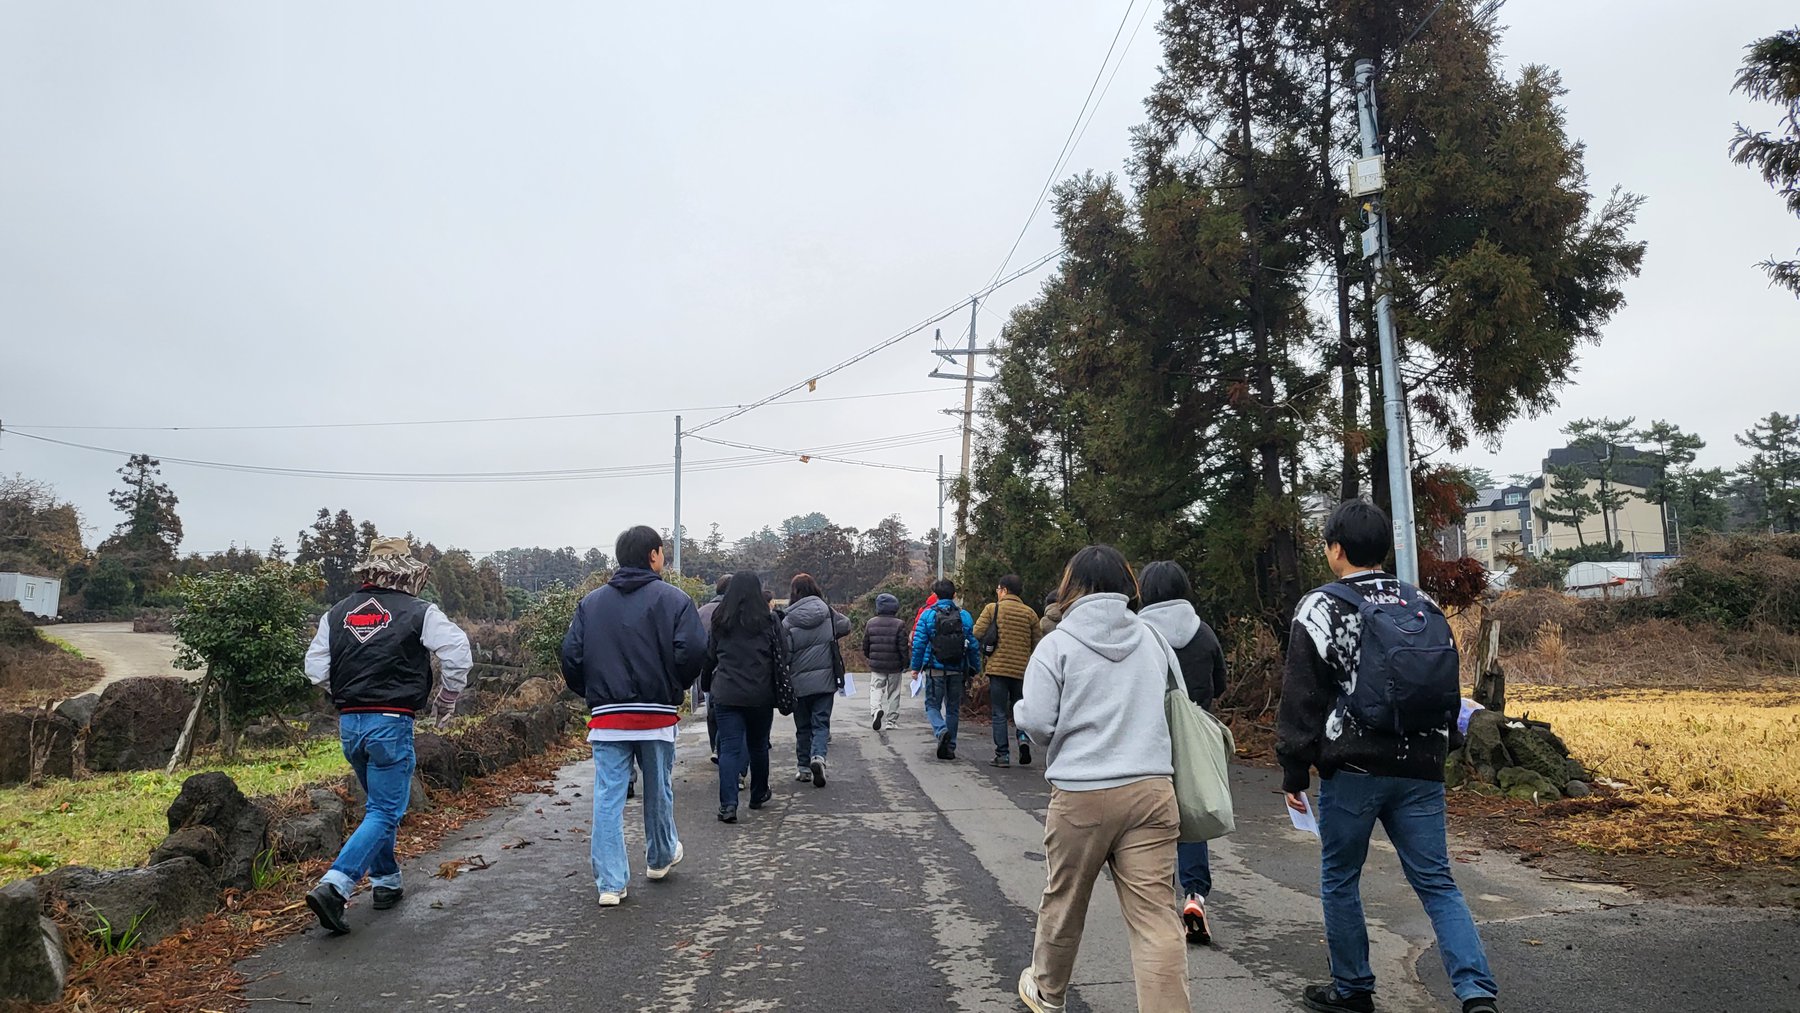 후원회원의 날 행사에 참가한 회원들이 봉개동의 길을 따라 걷고있습니다. (사진:제주다크투어 제공)